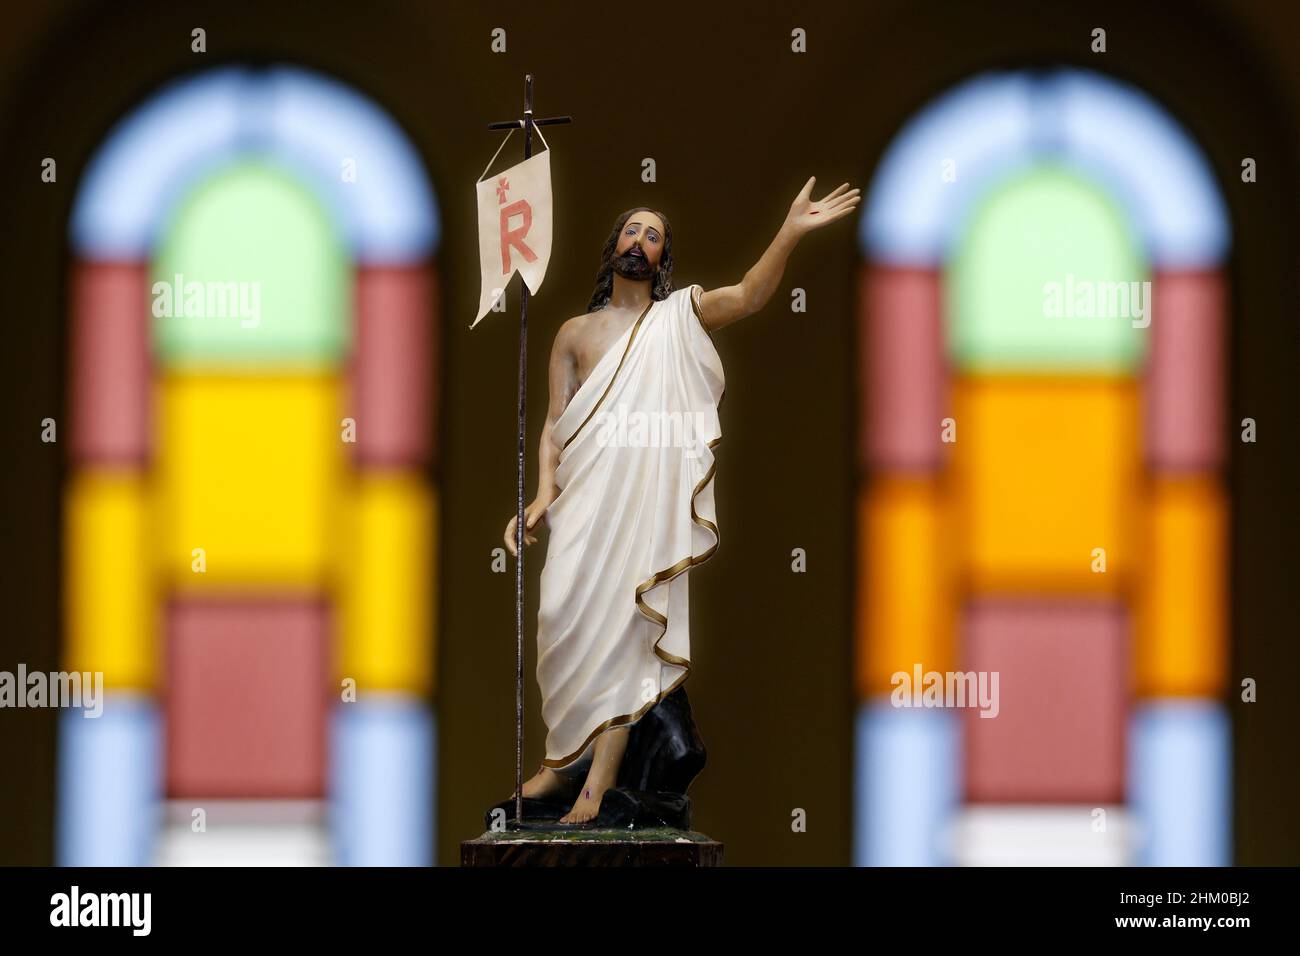 Risen Jesus Christ image of the catholic church - Catholic symbol Stock Photo